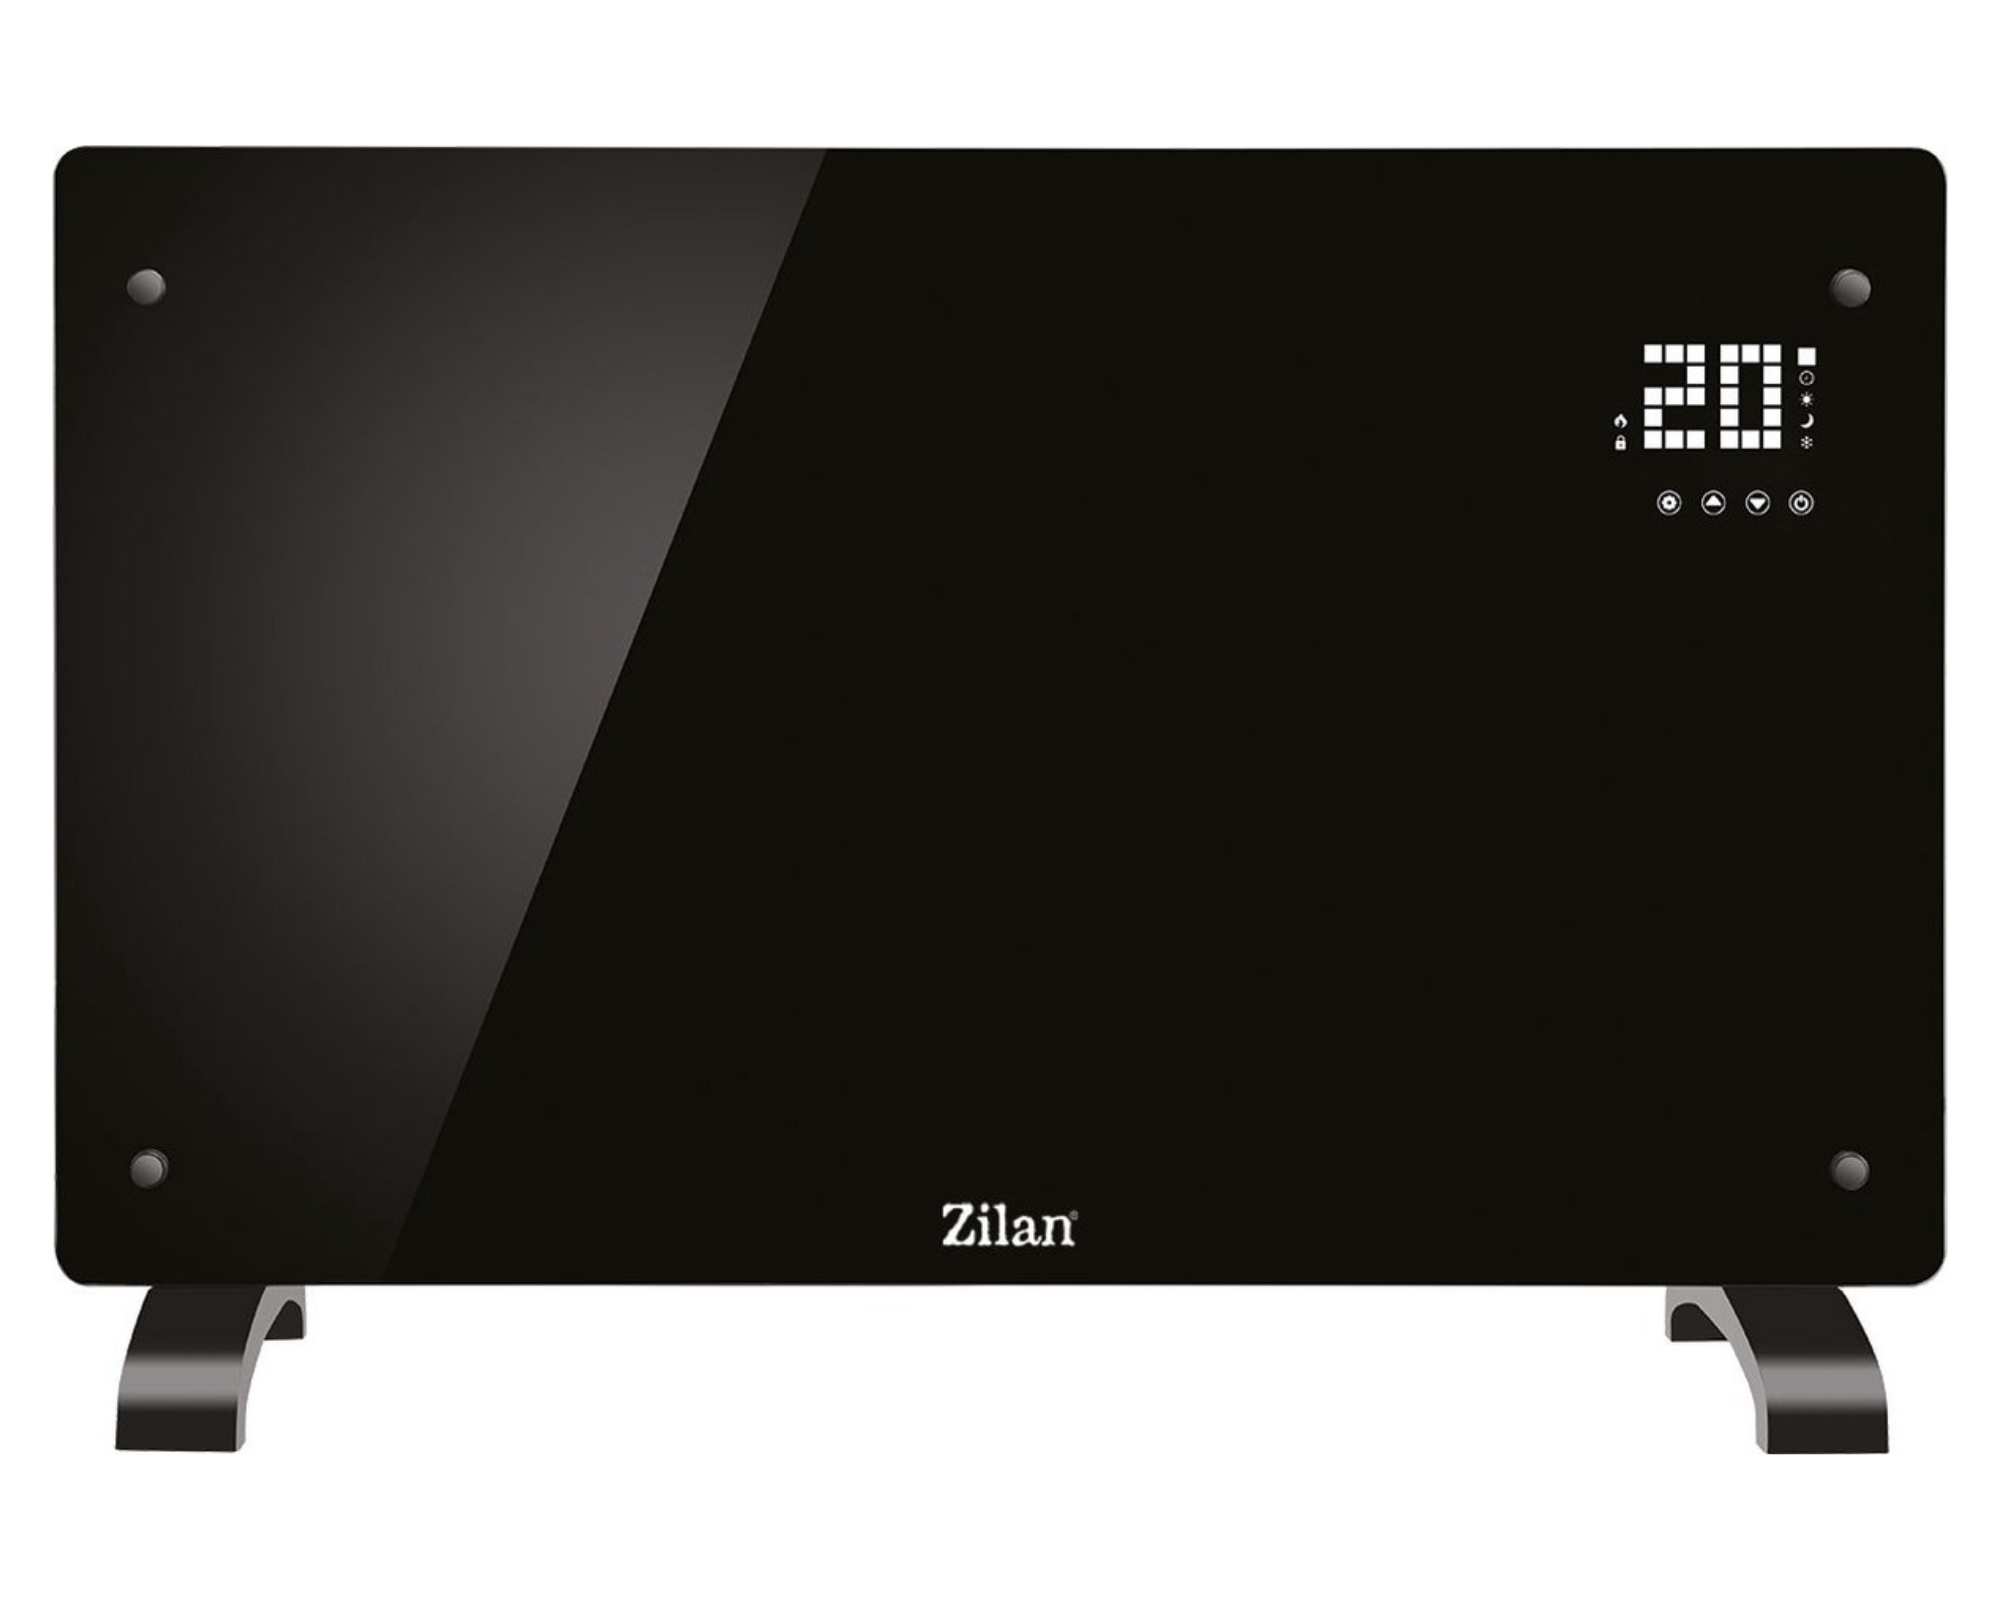 Zilan - Design Glasconvector - Glazen Convector - Convactorkachel - Verwarming - afstandsbediening - 2000 Watt